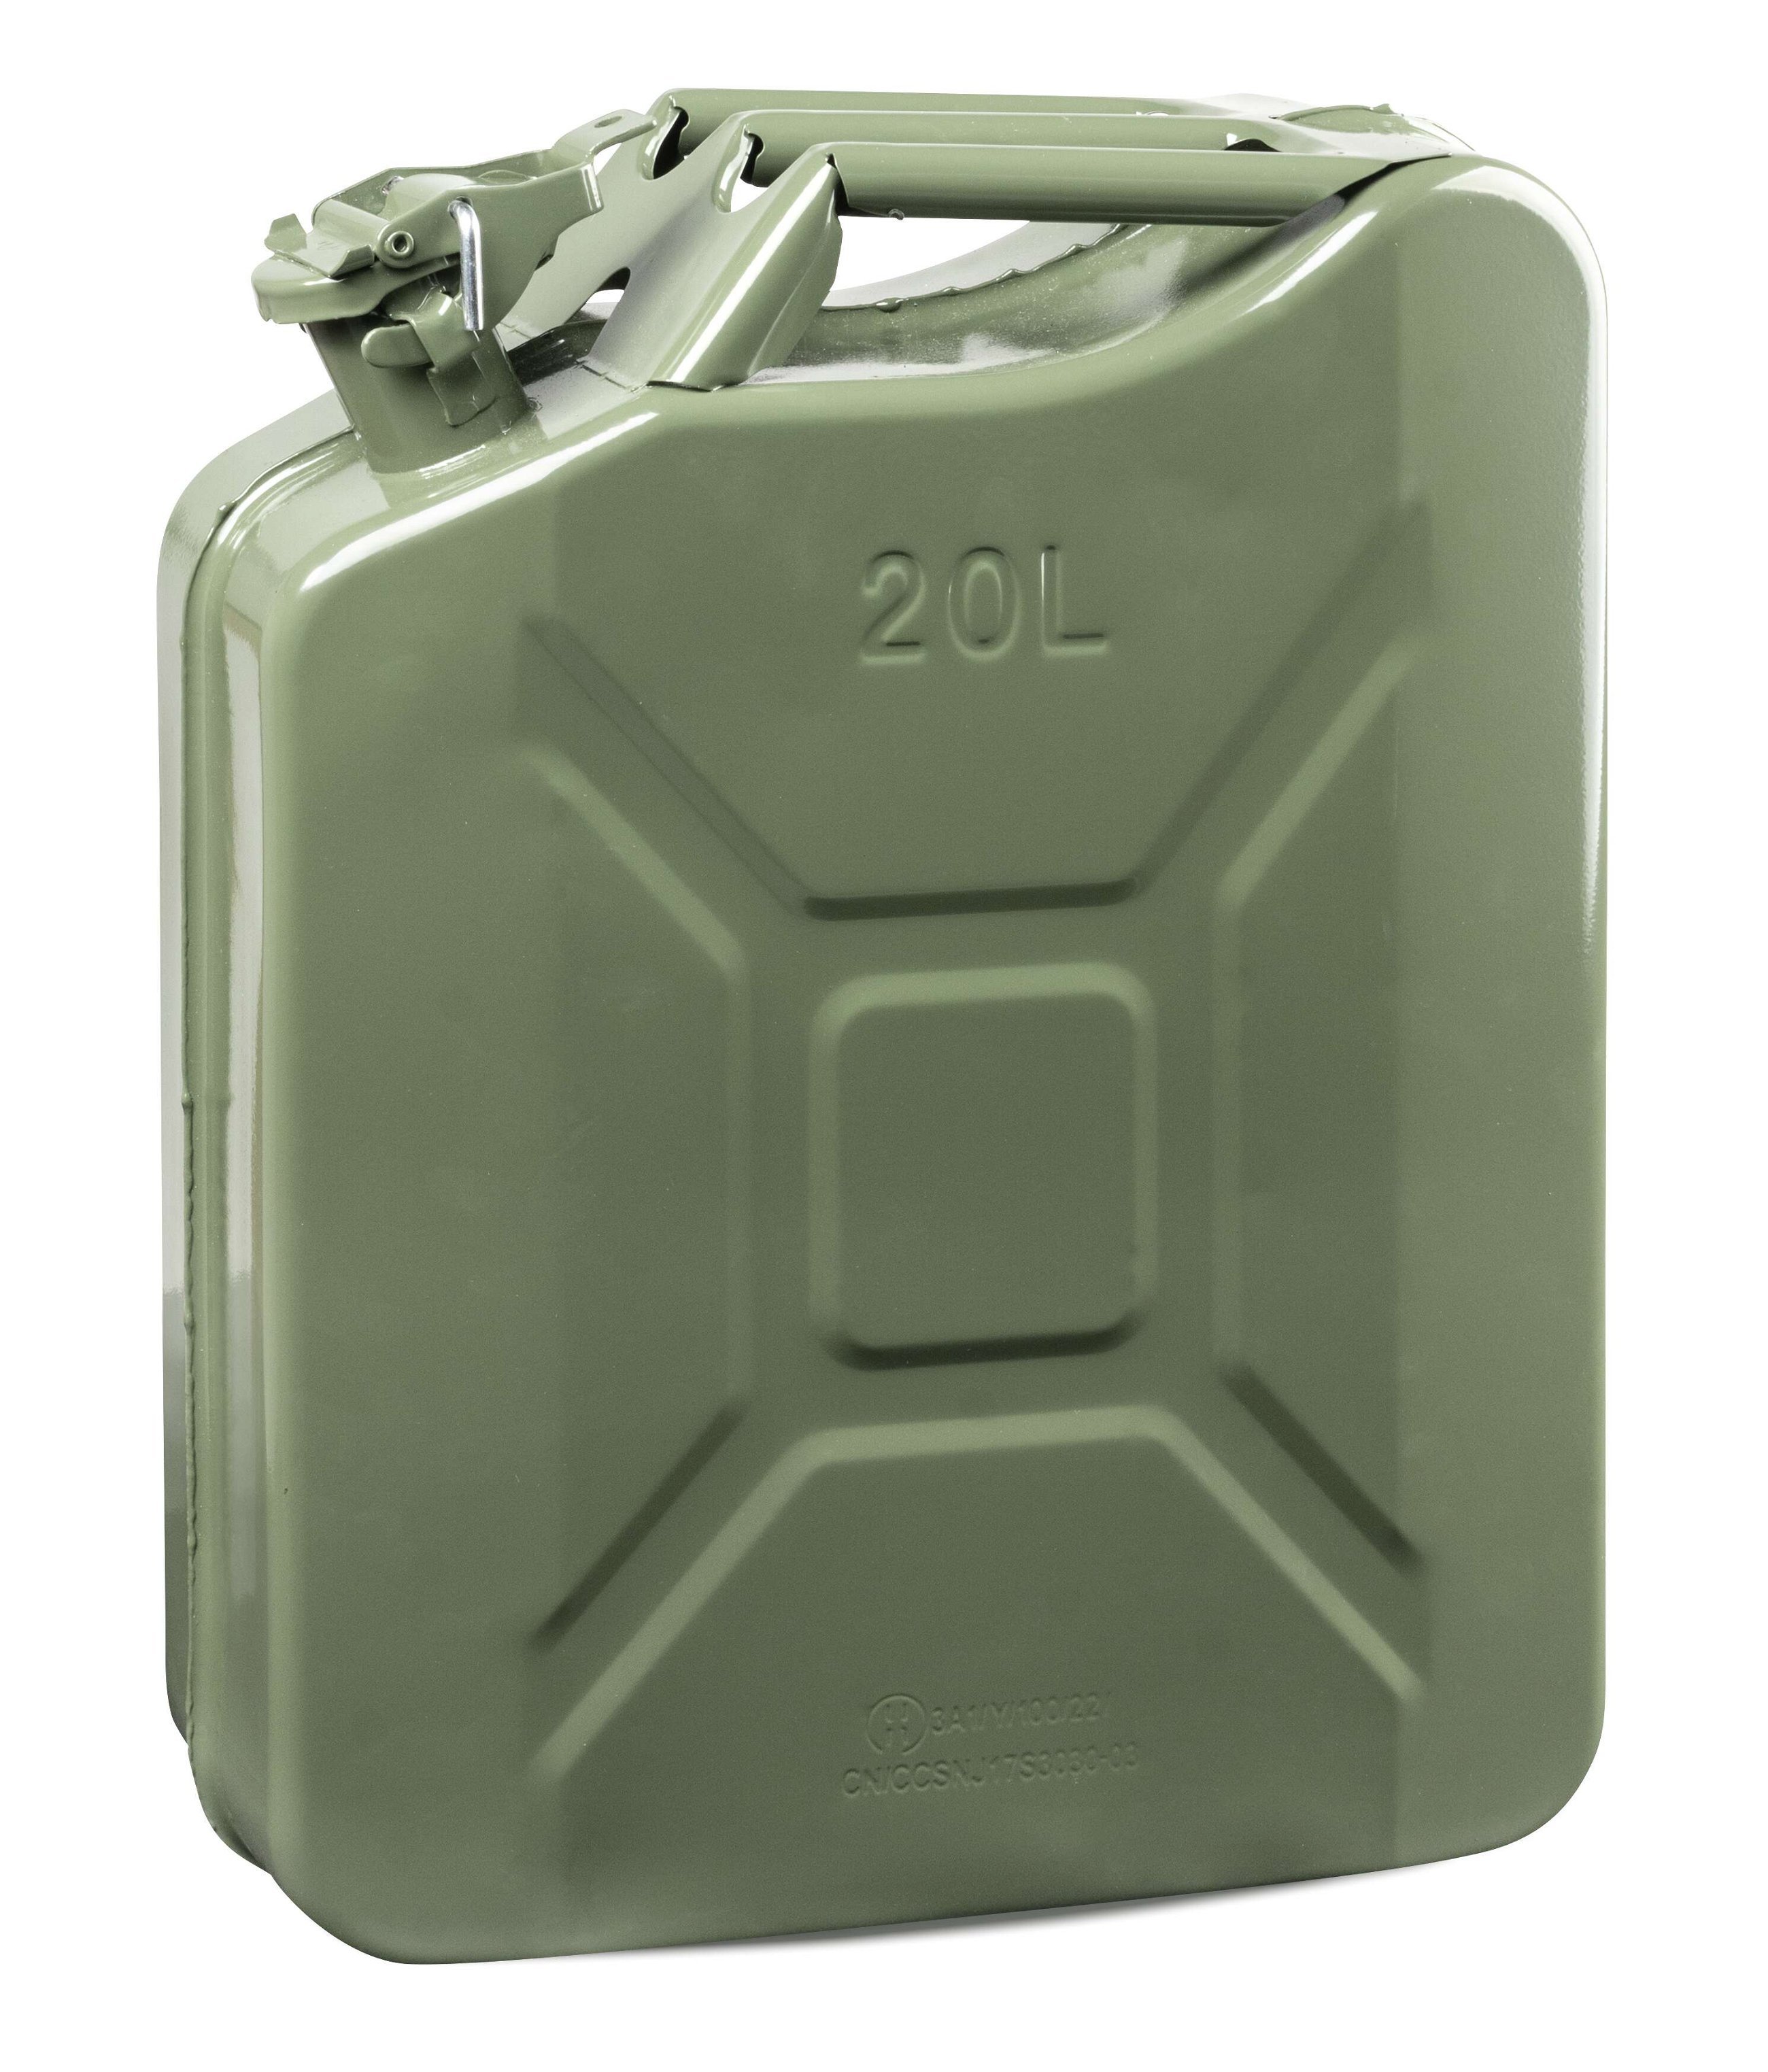 Benzinkanister Metall 20 Liter, Kraftstoffkanister, UN-zertifizierter Diesel Kanister mit Sicherheitsverschluss 3A1 olivegrün, 46x37x16 cm